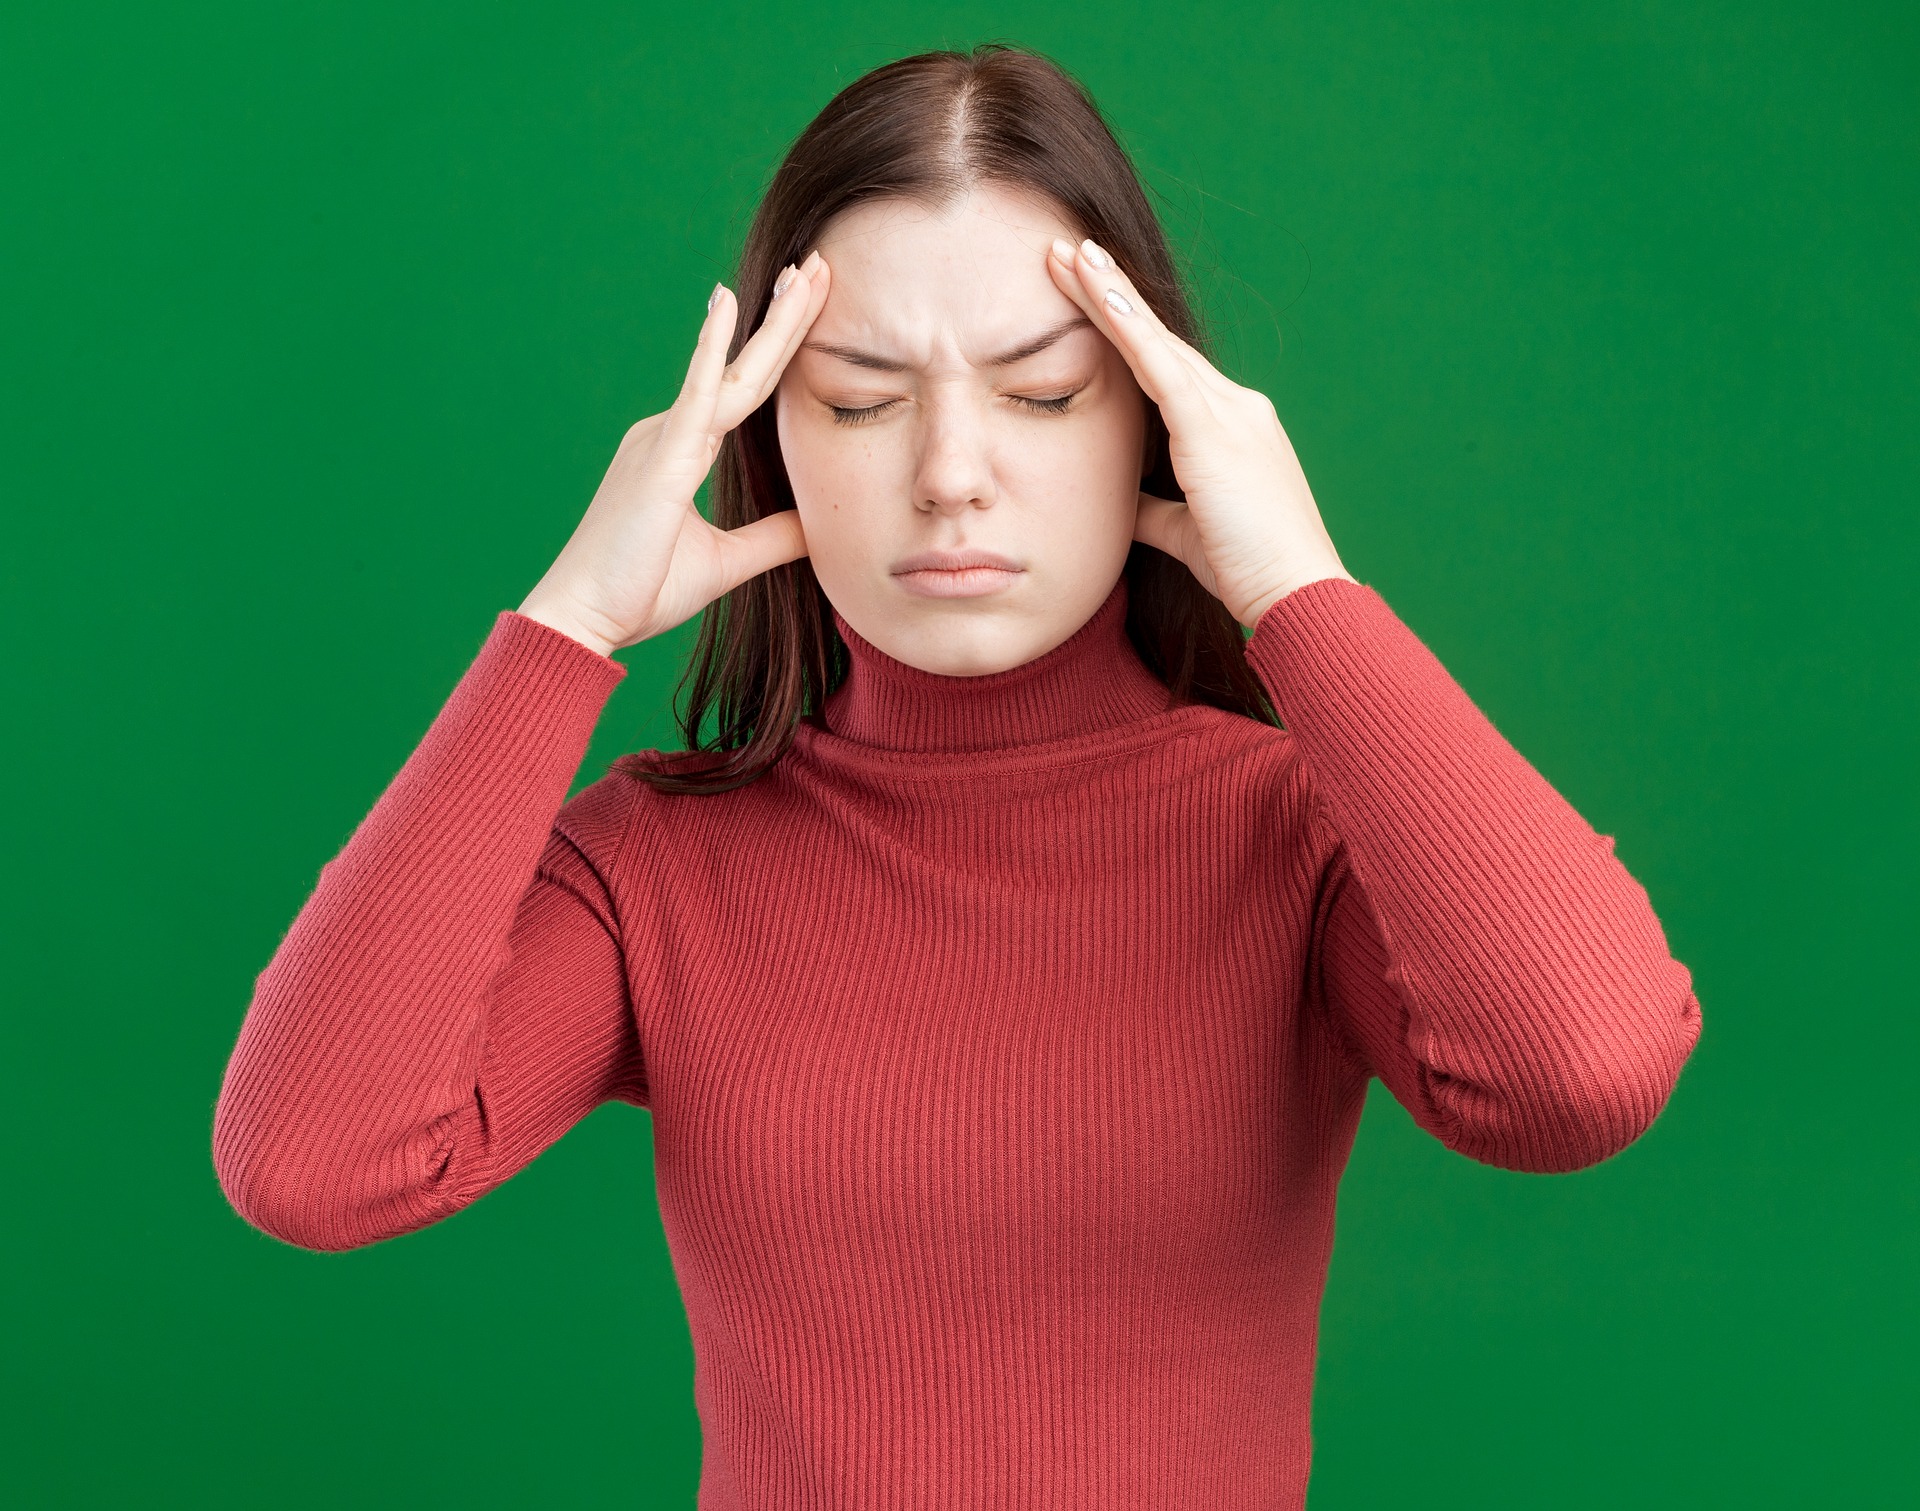 Daftar Makanan Penyebab Migrain Menurut Peneliti